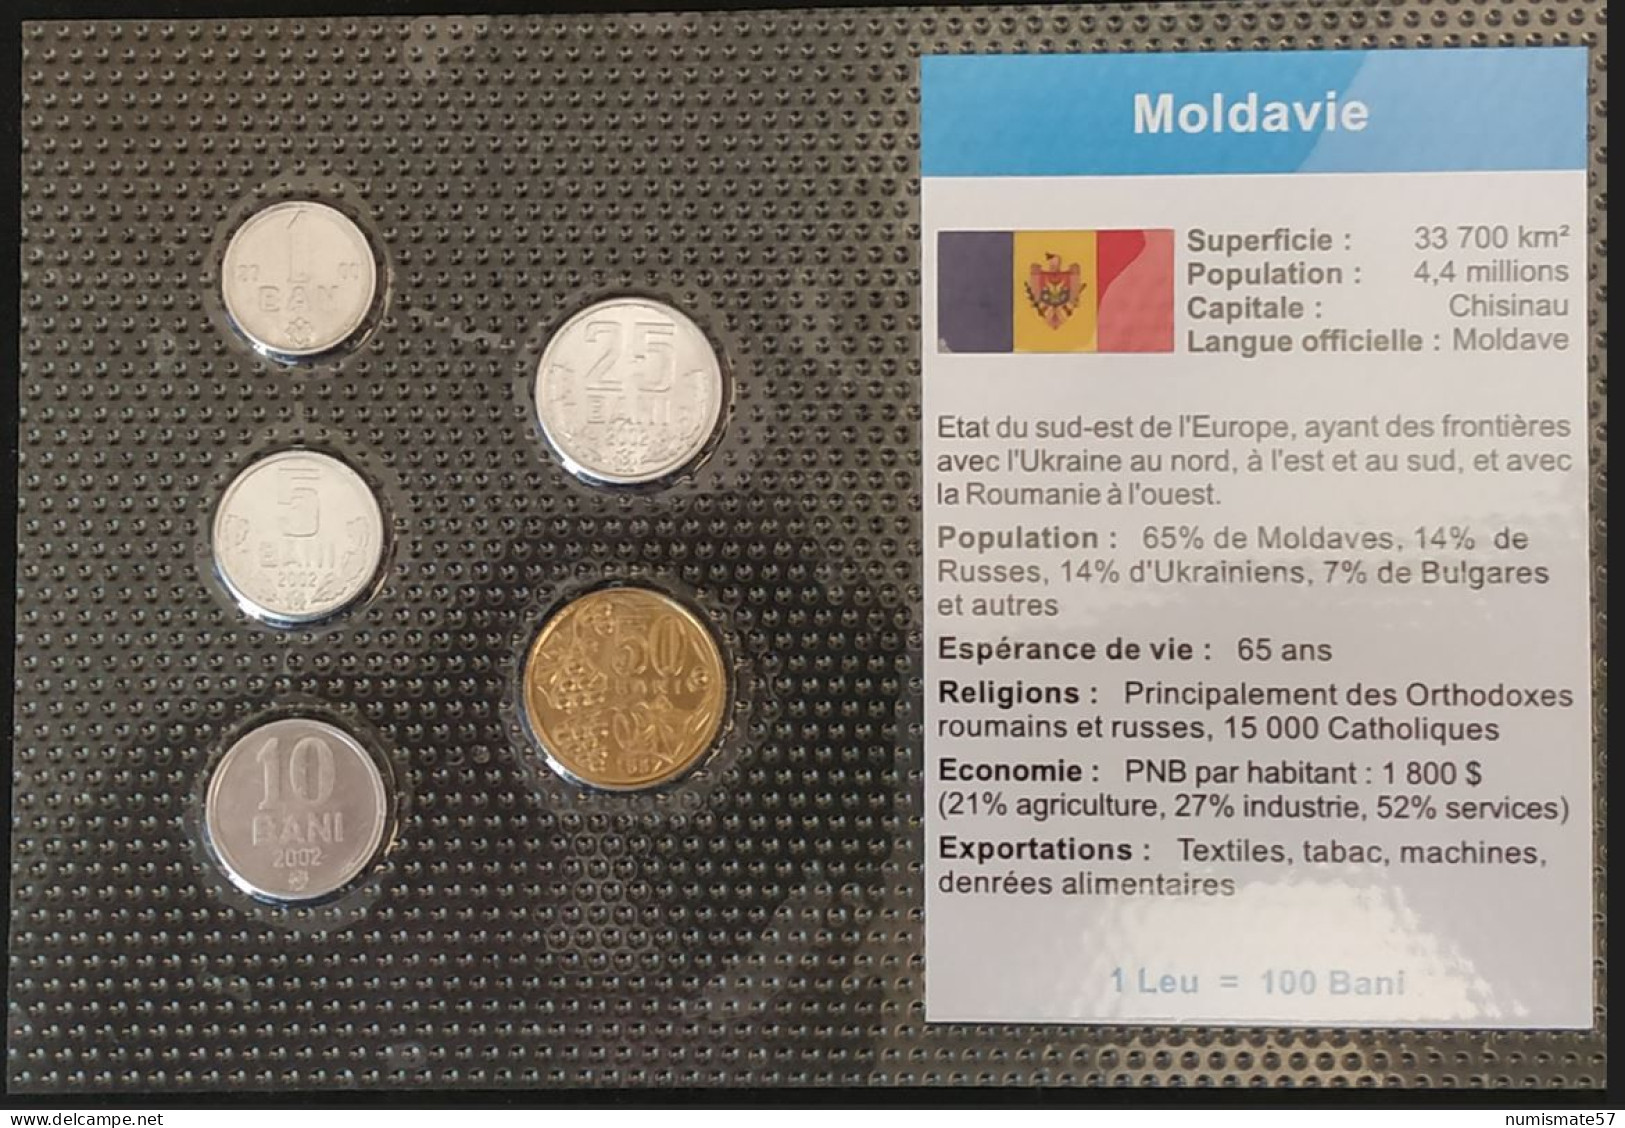 MOLDAVIE - MOLDAVIA - 1 BAN 2000 - KM 1 - 5 BANI 2002 - KM 2 - 10 BANI 2002 - KM 7 - 25 BANI 2002 - KM 3 - 50 BANI 1997 - Moldova